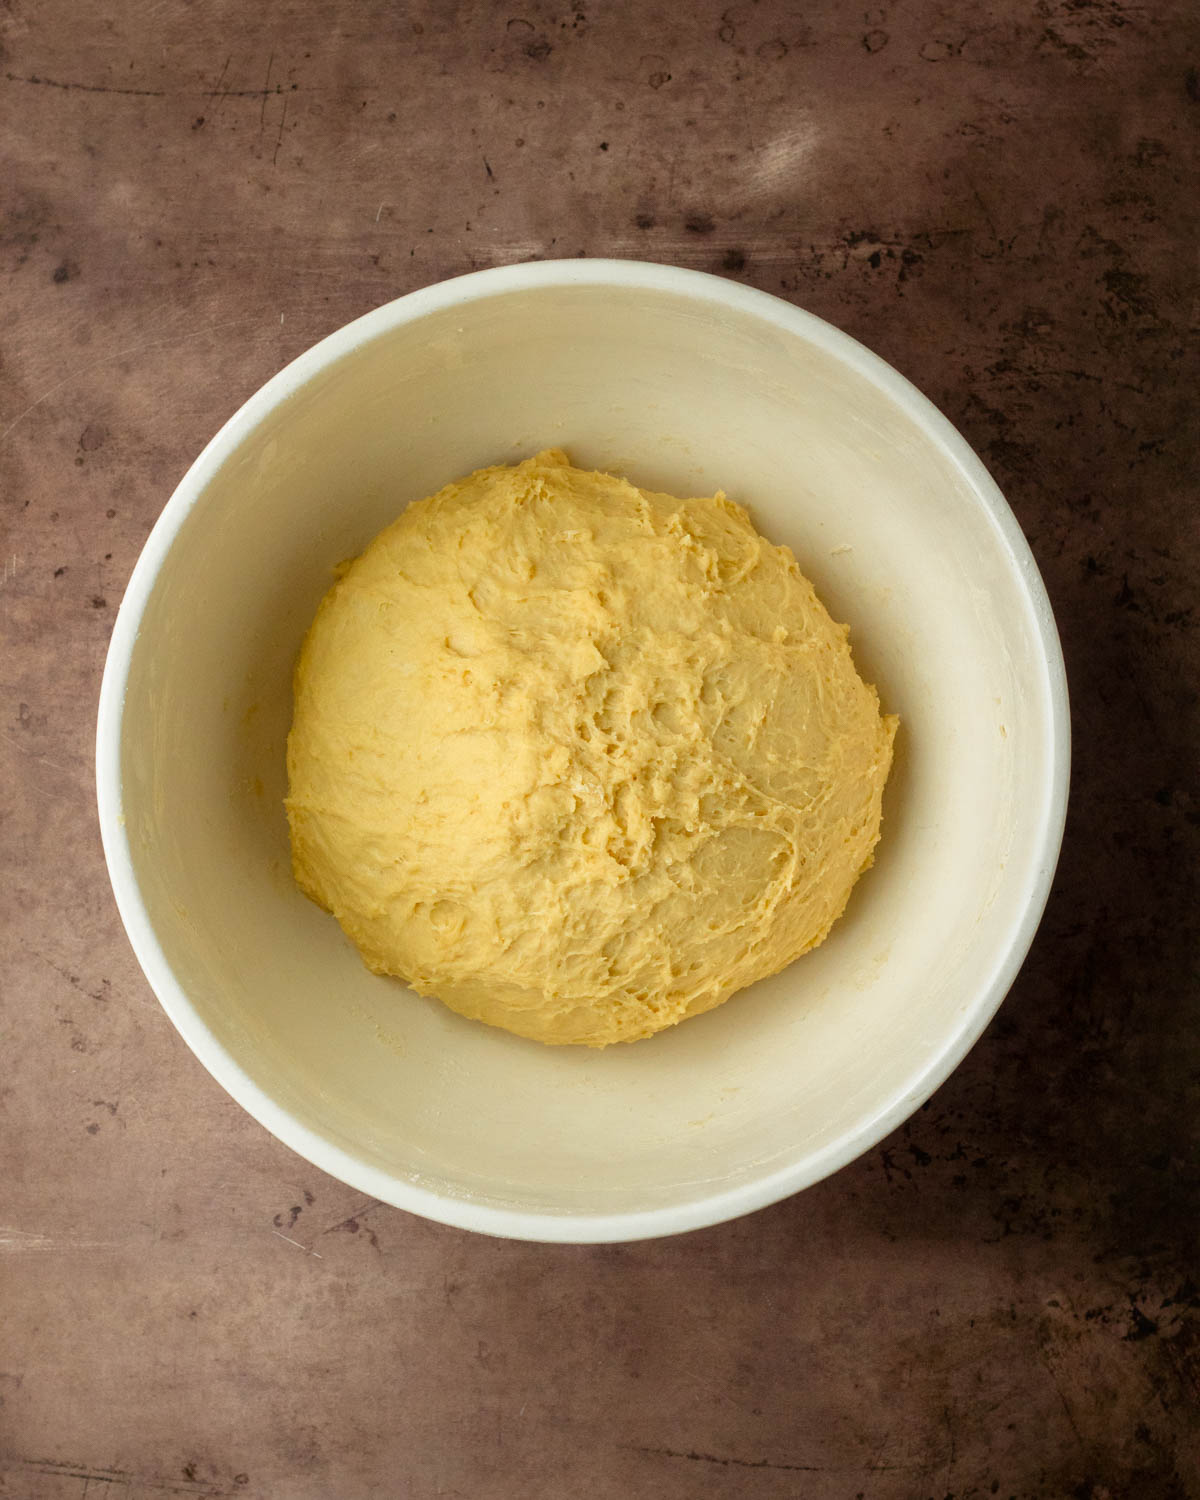 Step 1. Make the dough.